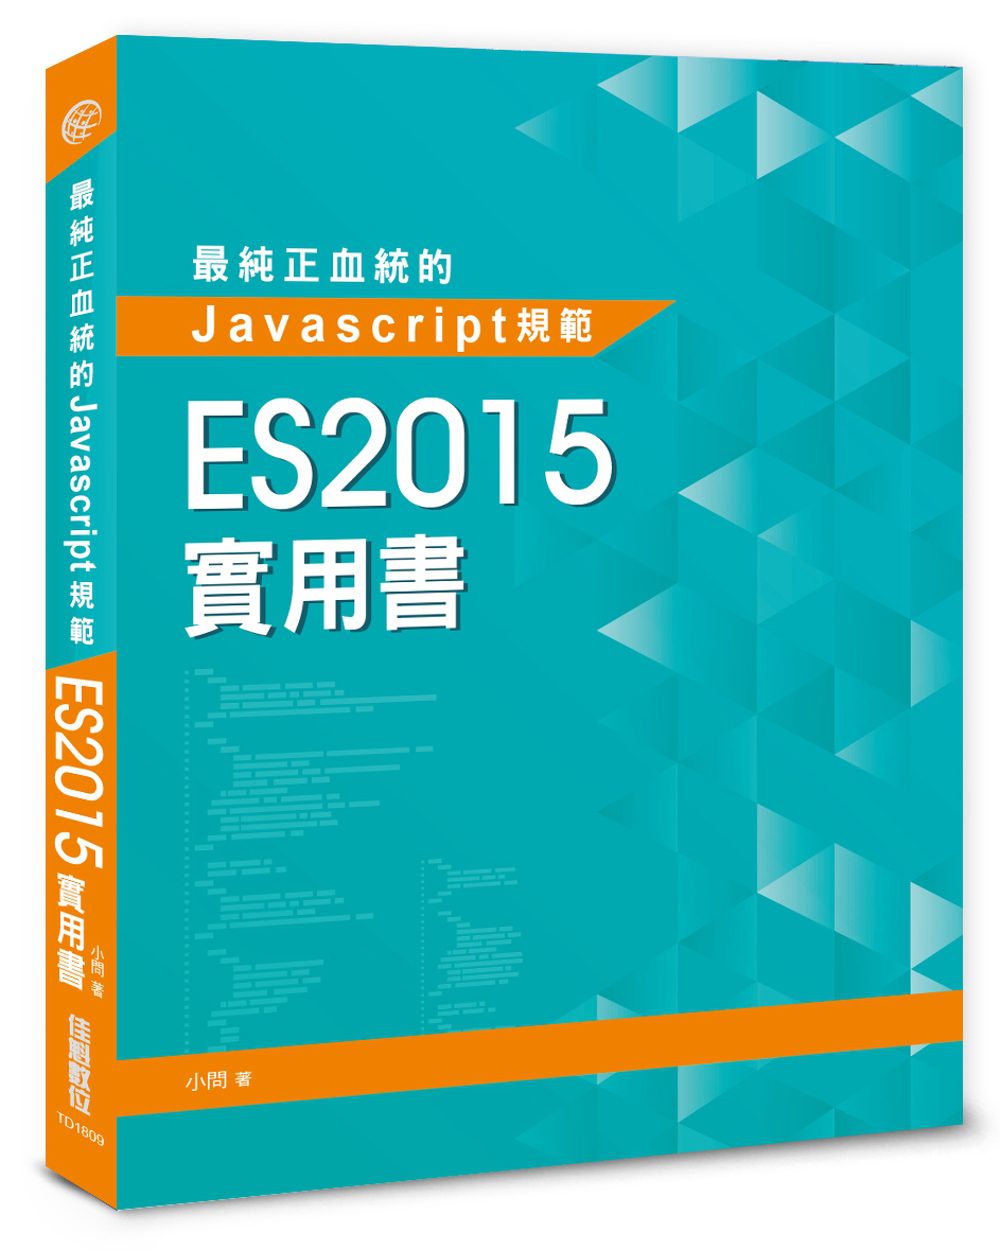 最純正血統的Javascript規範：ES2015實用書